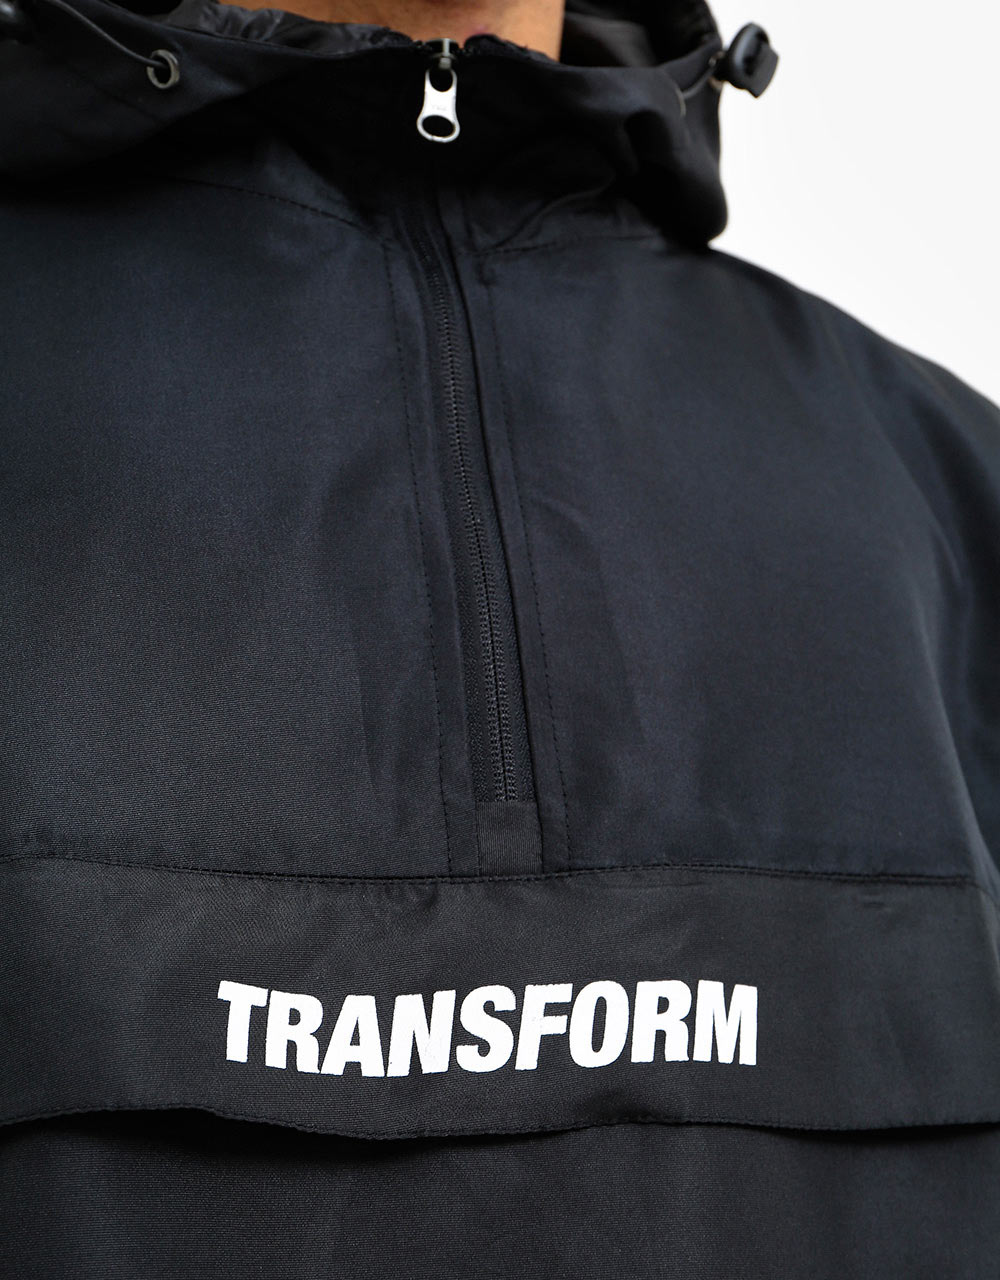 Transform The Fast Text Windbreaker 2021 Snowboard Jacket - Black/Black